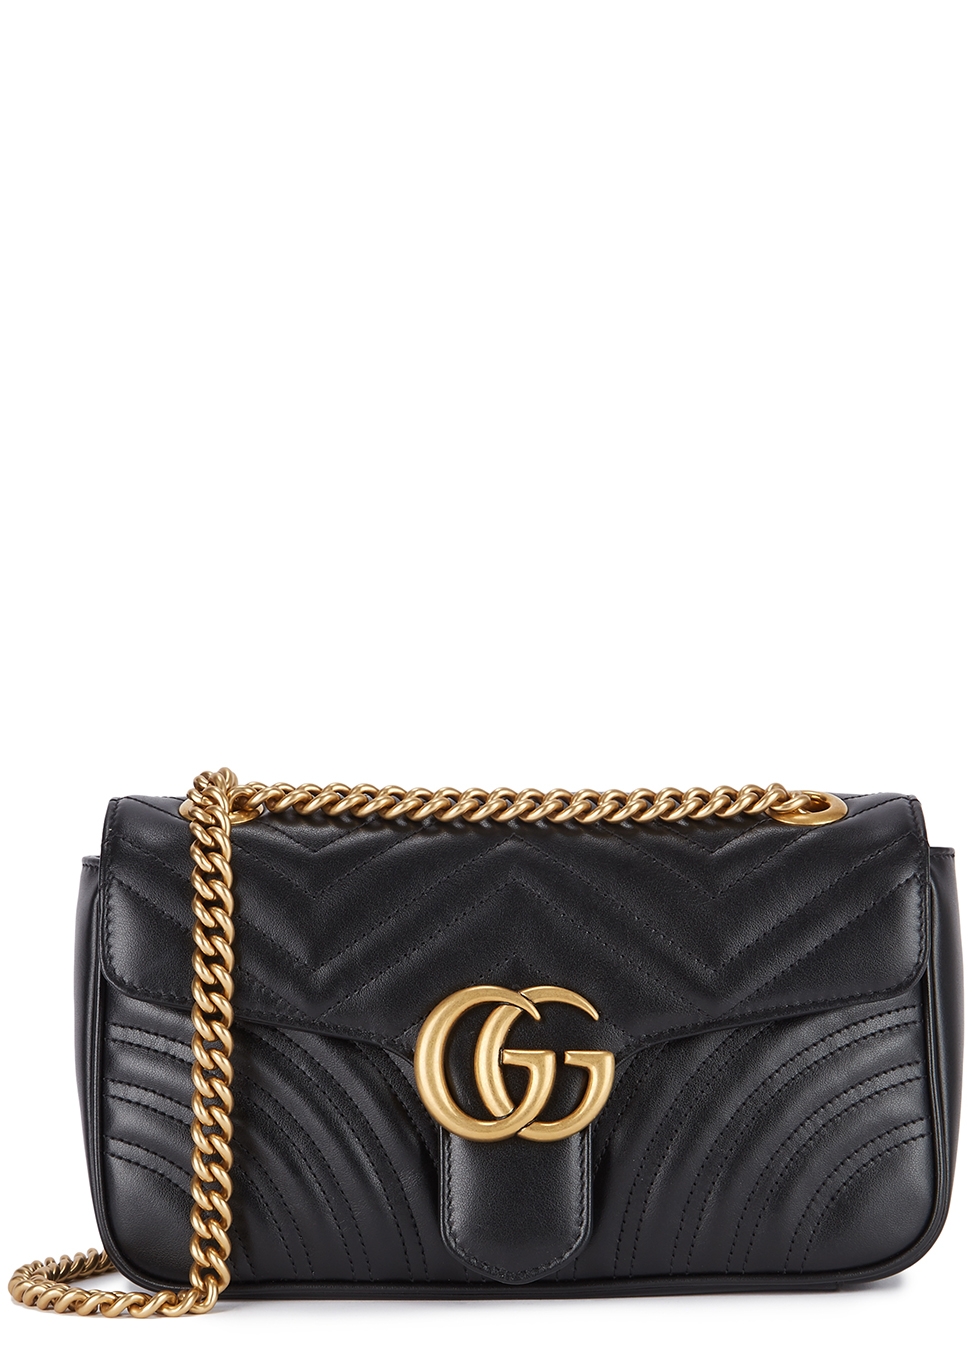 black gucci handbag